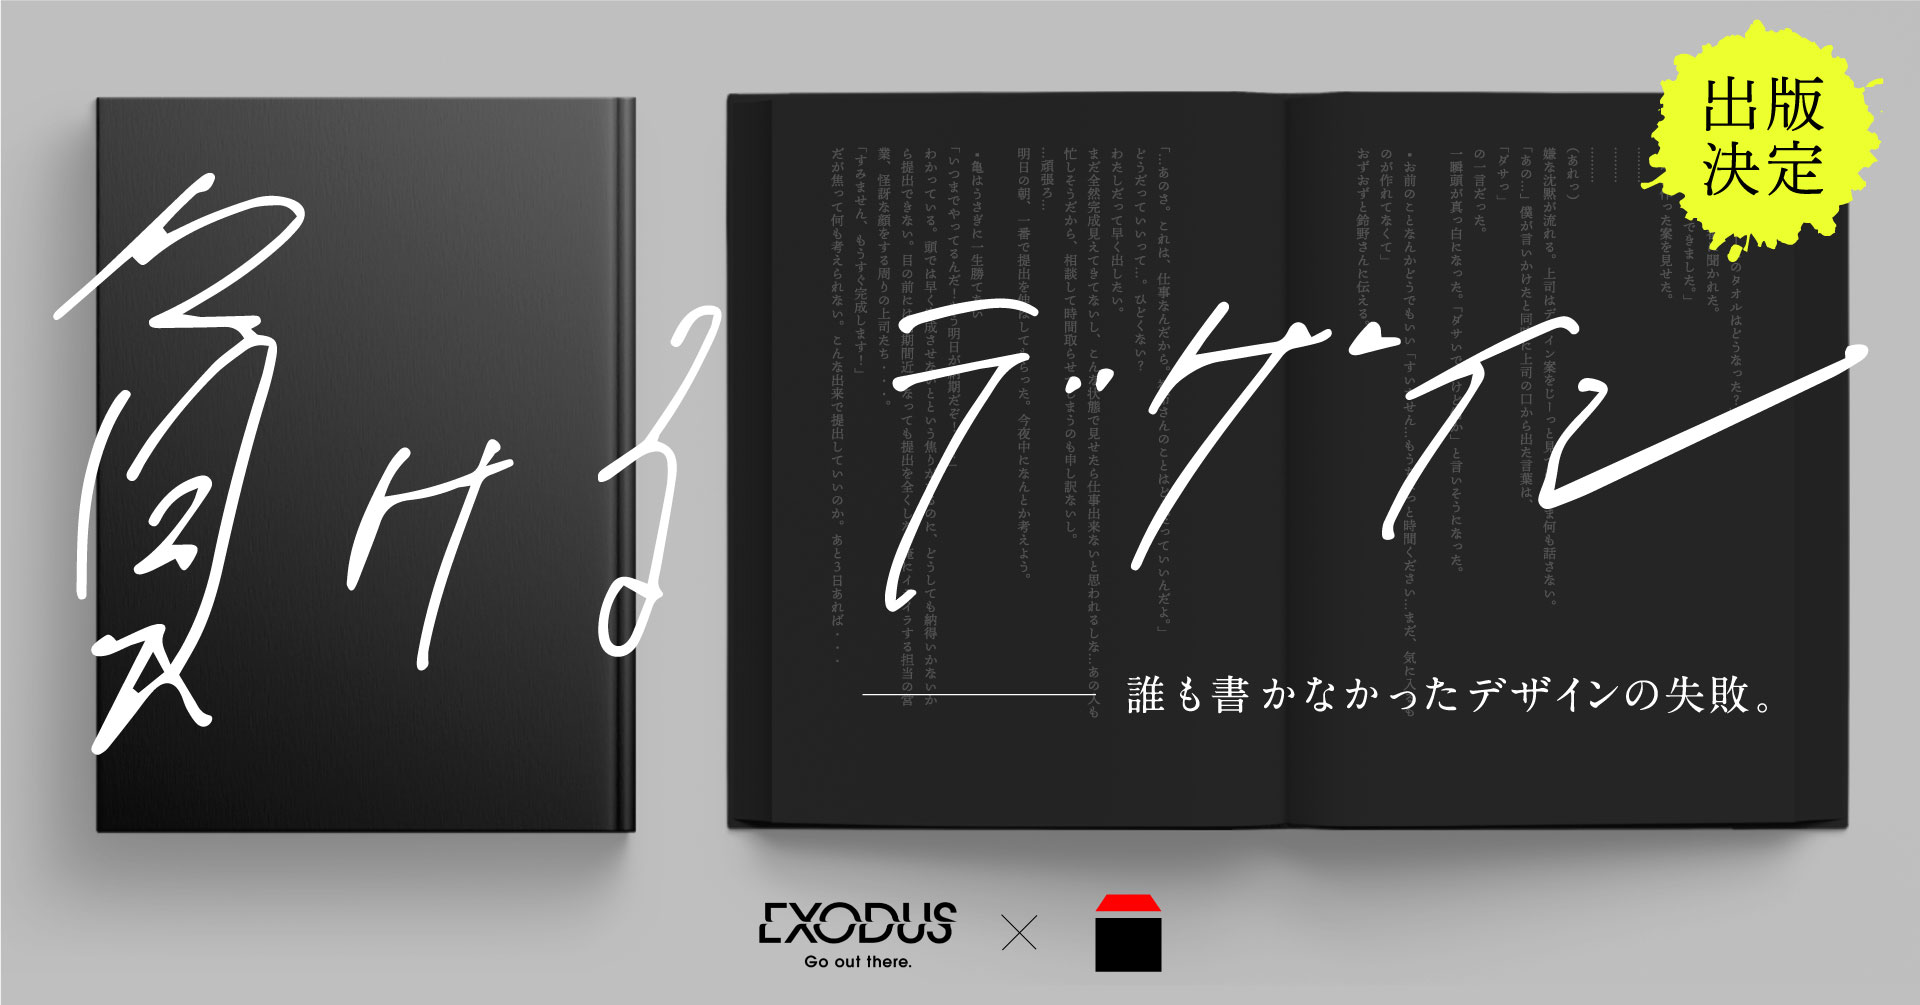 出版の常識をぶった斬る 前田デザイン室 Exodusがタッグを組んだ小説 負けるデザイン 出版決定 株式会社nasuのプレスリリース